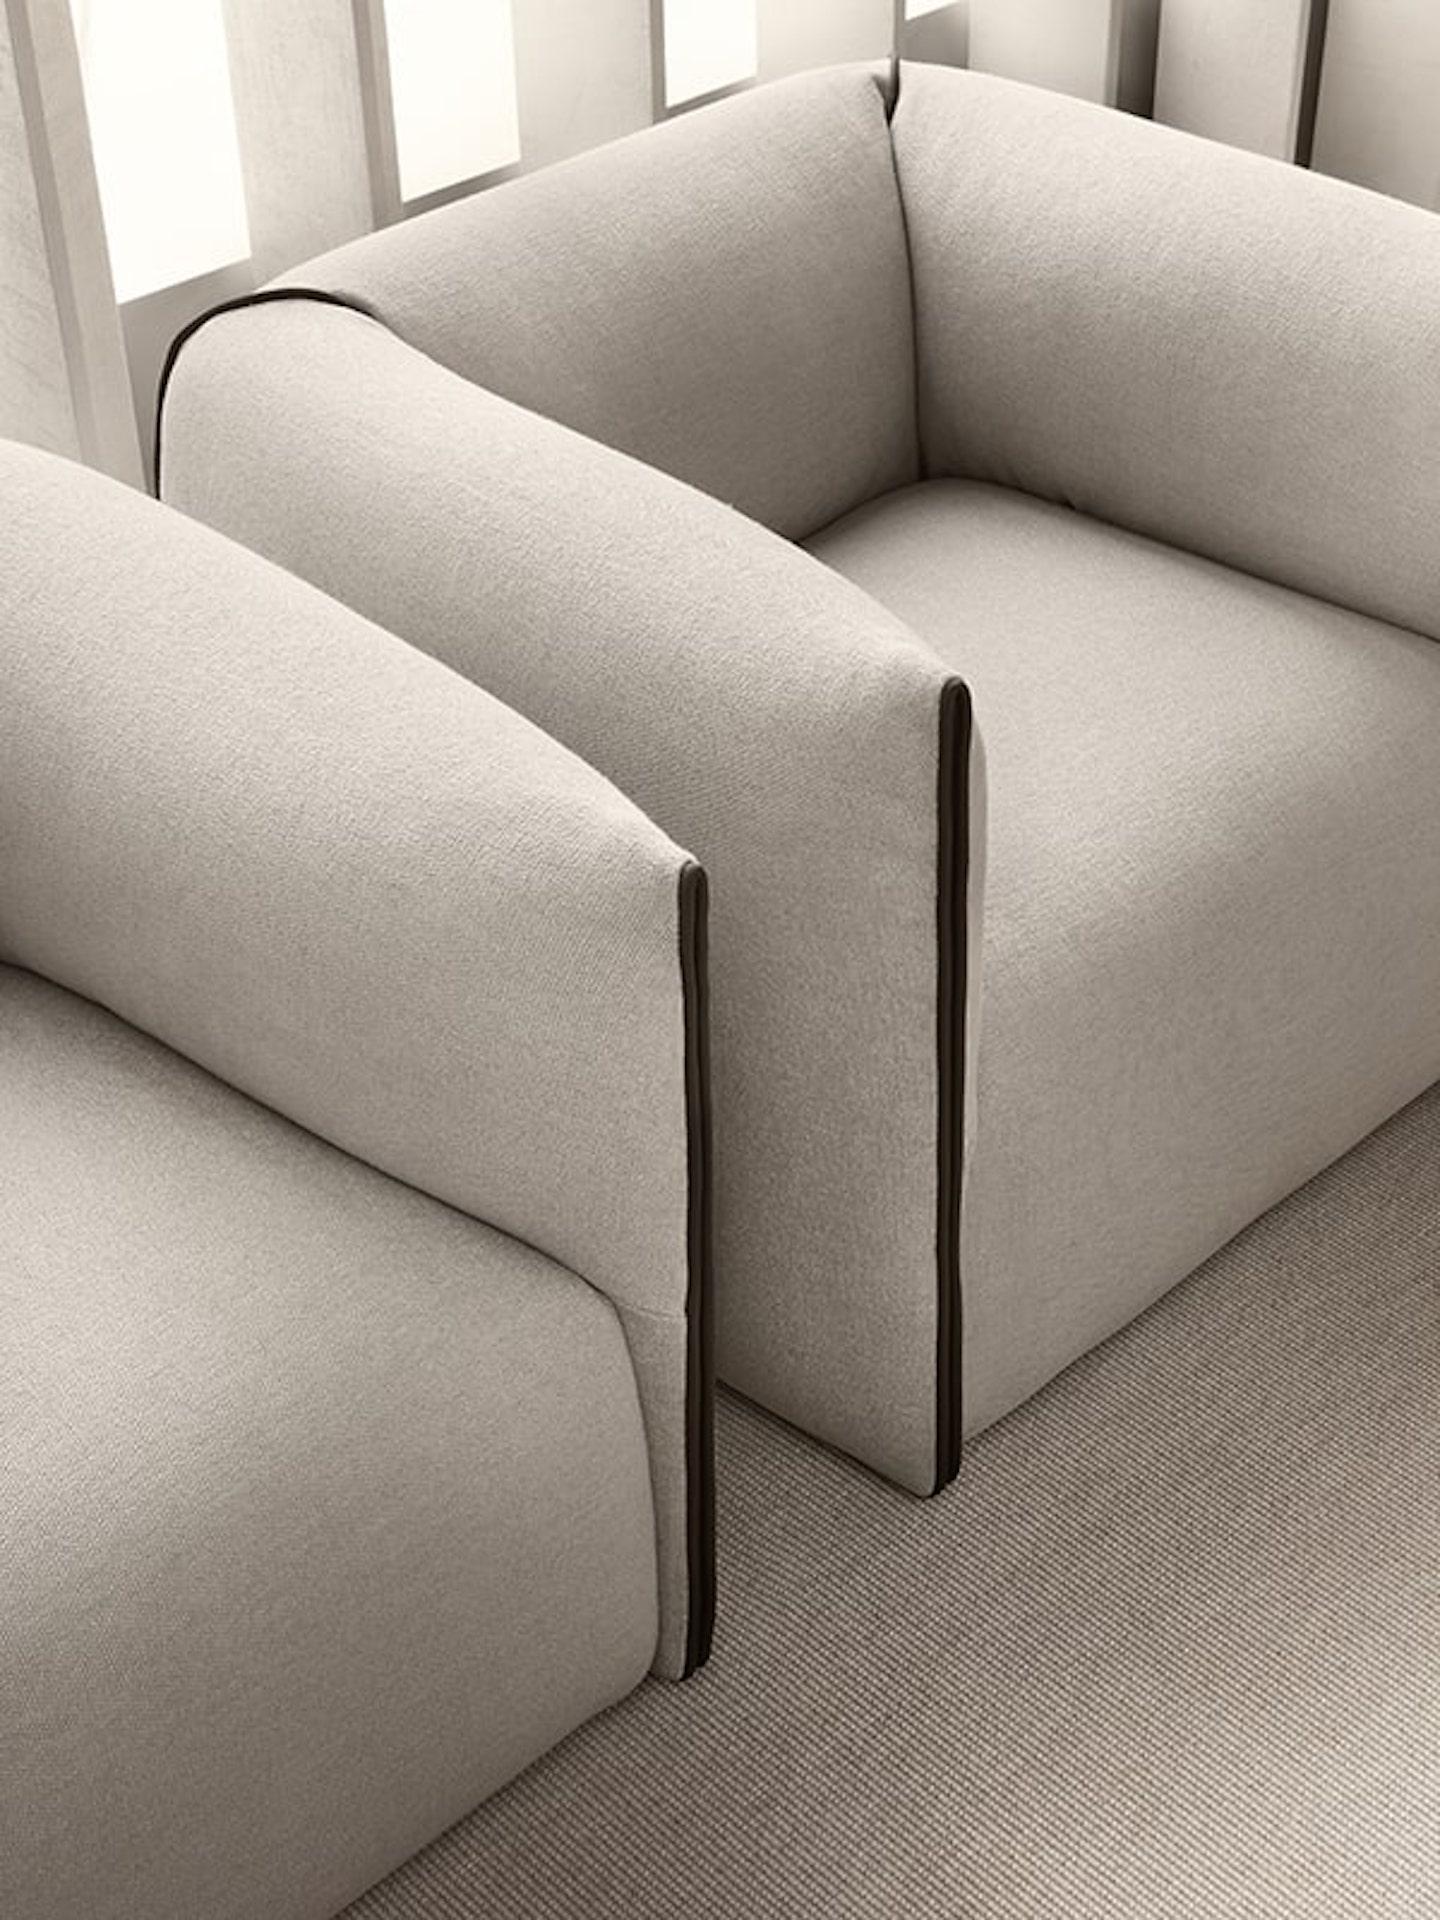 Un fauteuil compact, doux, confortable et à forte personnalité a rejoint la collection MDF Italia. Le design Mia soft provient du simple geste de plier un coussin pour créer un nid - un abri pour les moments de détente. La collection Mia se